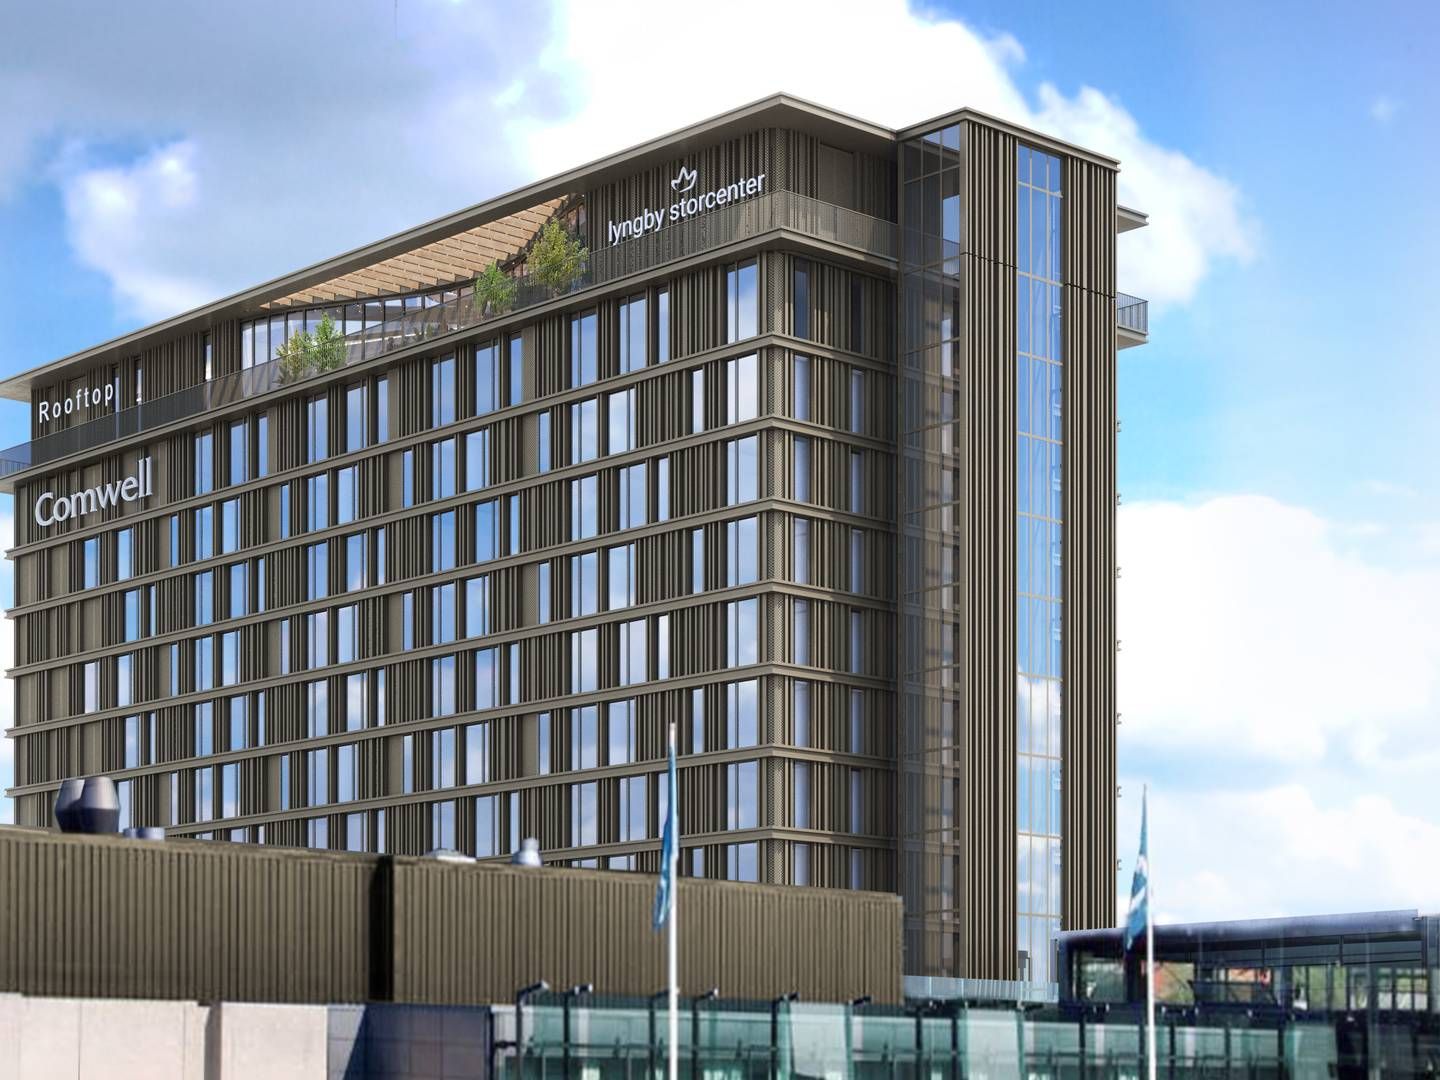 PHL Arkitekter har udarbejdet en visualisering af det kommende hotel ovenpå Lyngby Storcenter. | Foto: Pr / Phl Arkitekter